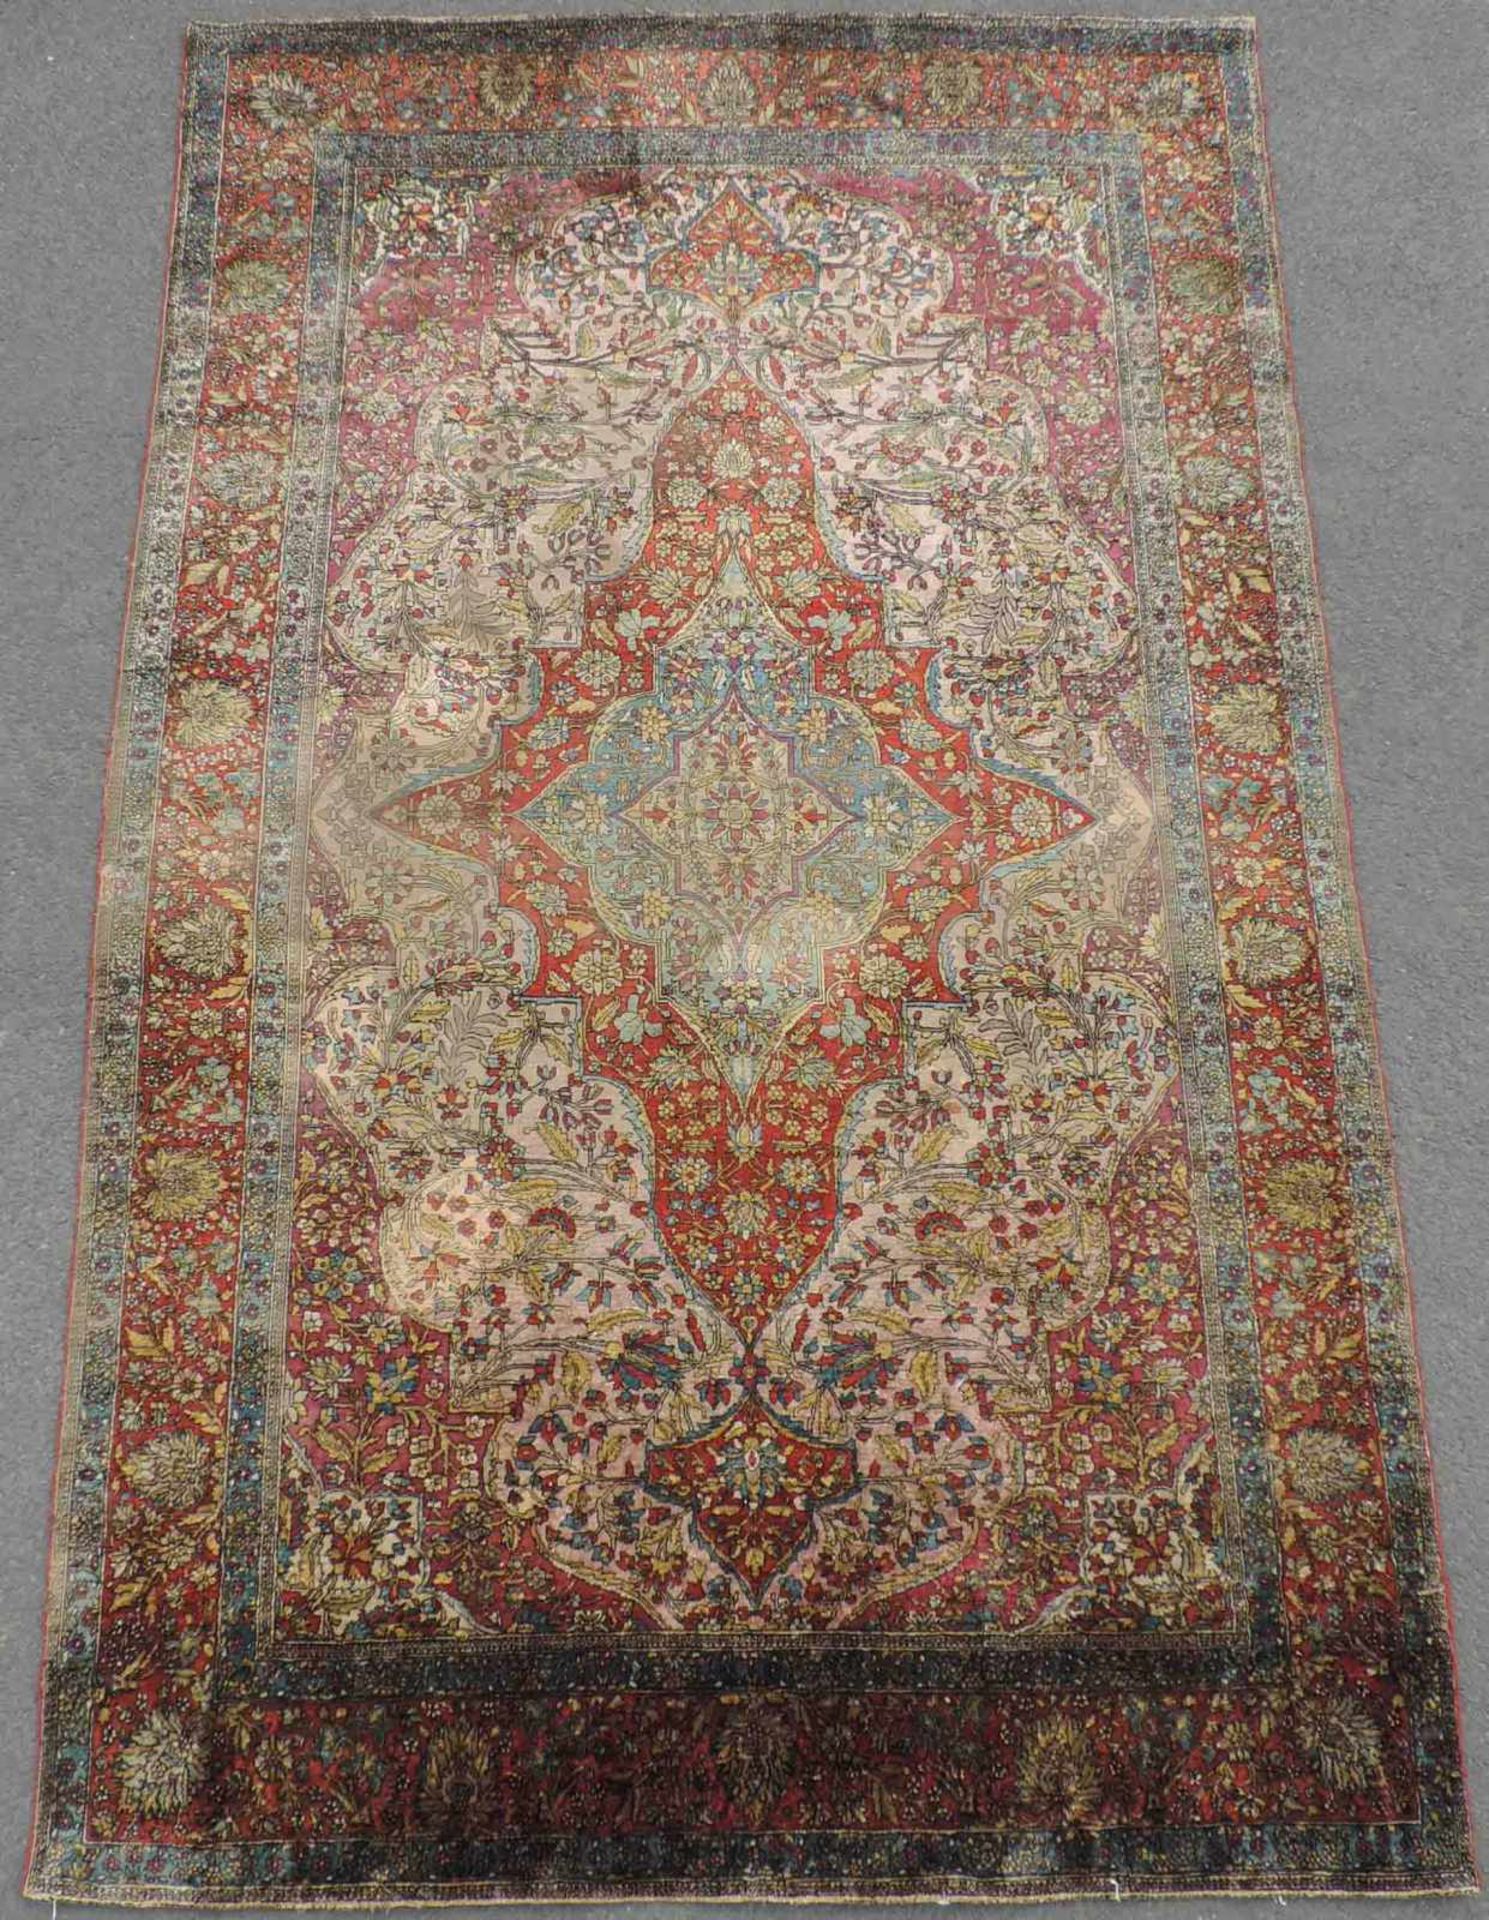 Keschan "Motascham" Orientteppich. Seide. Iran. Antik, um 1910. 205 cm x 133 cm. Handgeknüpft. Seide